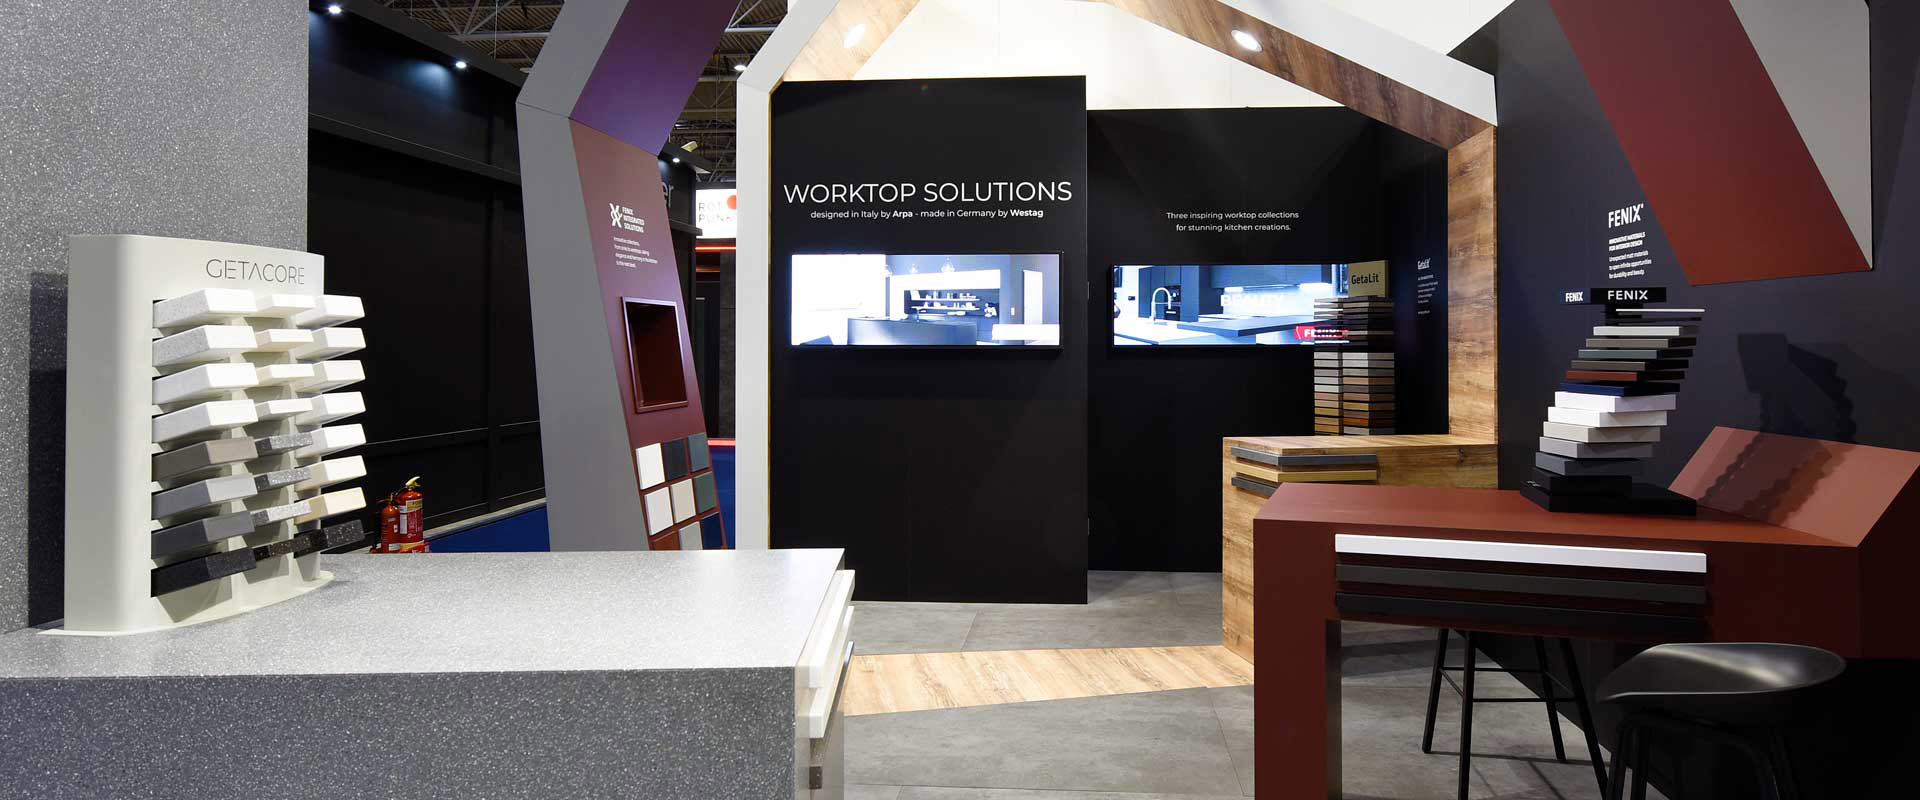 Design dello stand del progetto Worktop Solutions